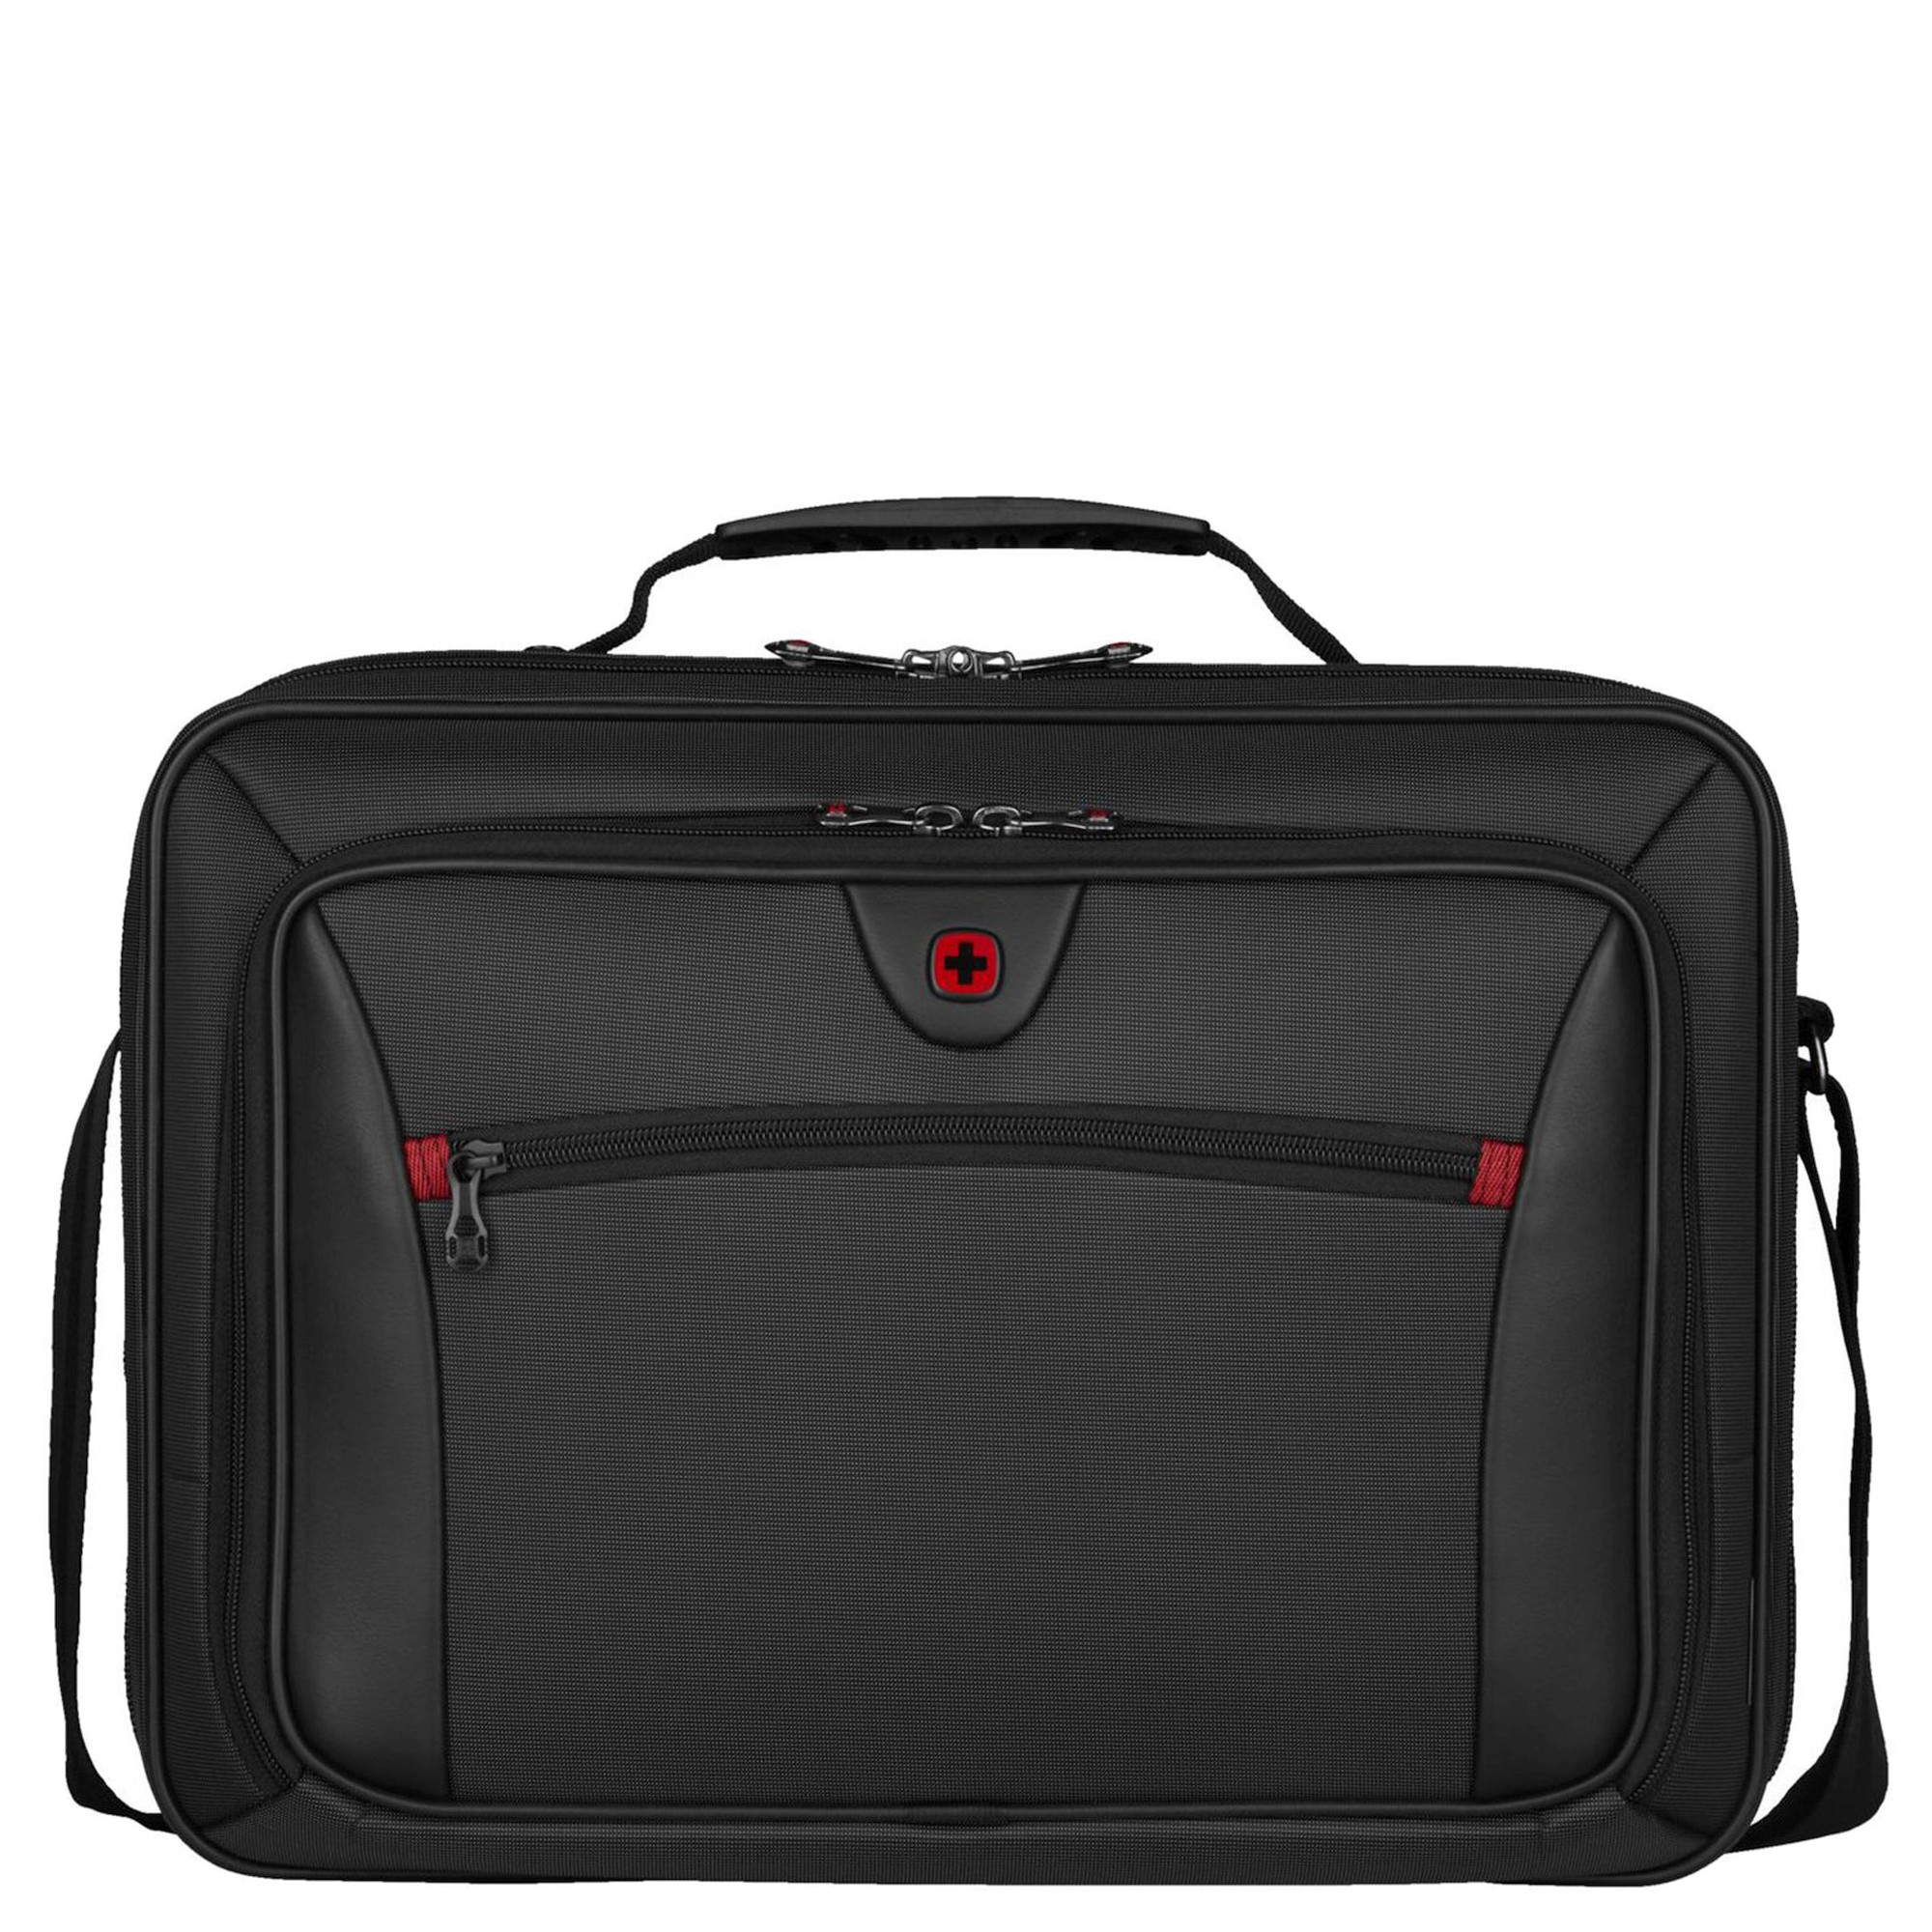 Сумка для ноутбука Wenger Insight 15.6 44 cm, серый сумка для ноутбука wenger reload 16 44 cm черный